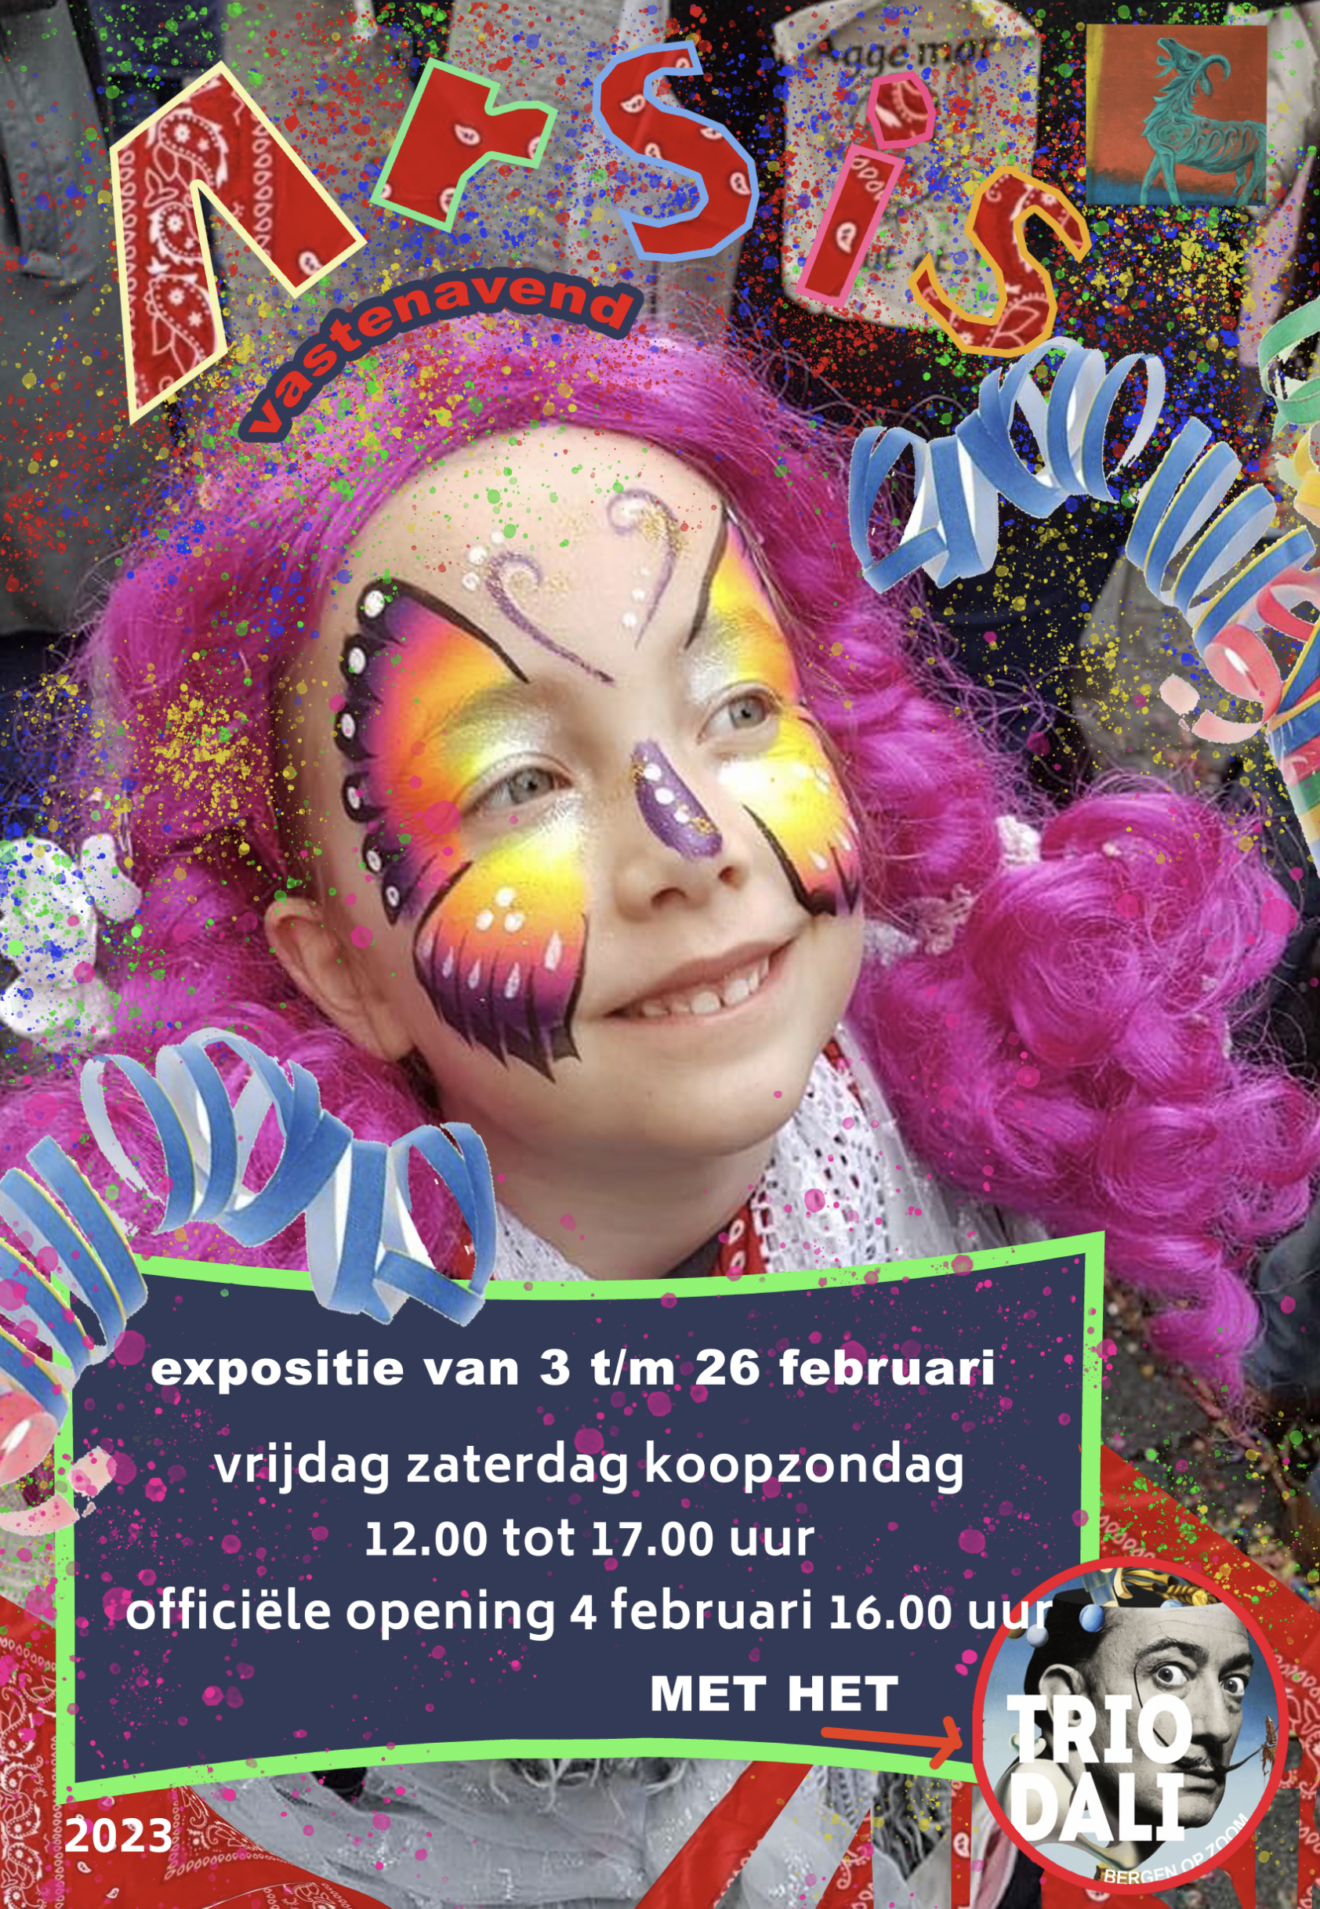 'Een Bonte Verzameling' Een expositie voor en door liefhebbers van Vastenavond en Carnaval, Mardi Gras en Vette Dinsdag. 3 t/m 26 februari 2023. Galerie Arsis.